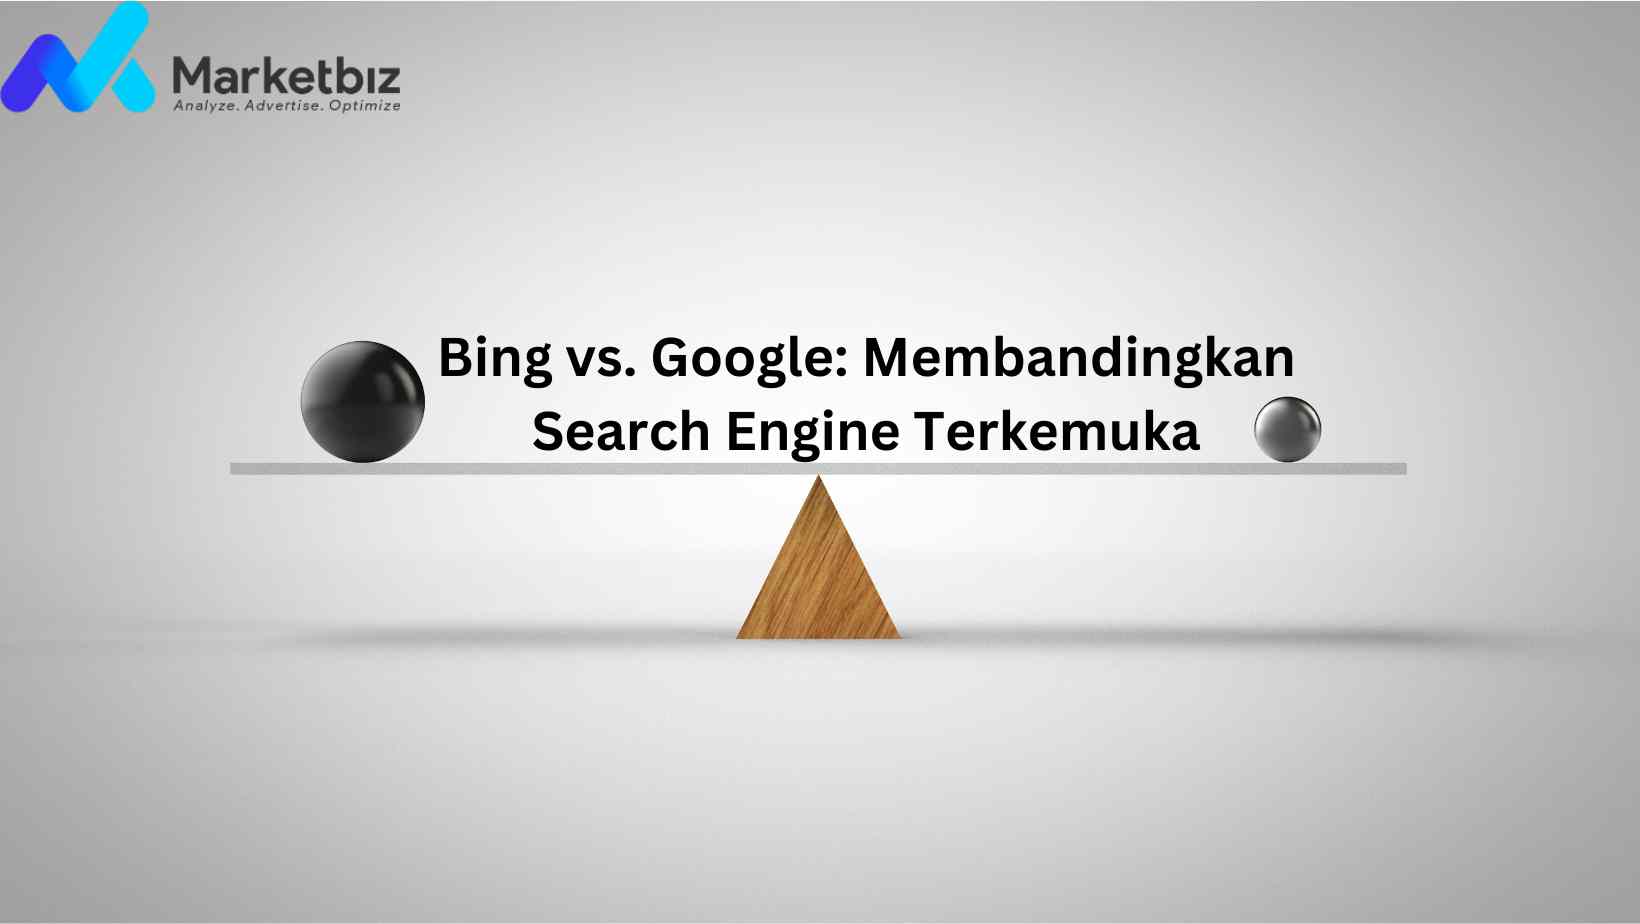 Bing vs. Google: Membandingkan Dua Search Engine Terkemuka